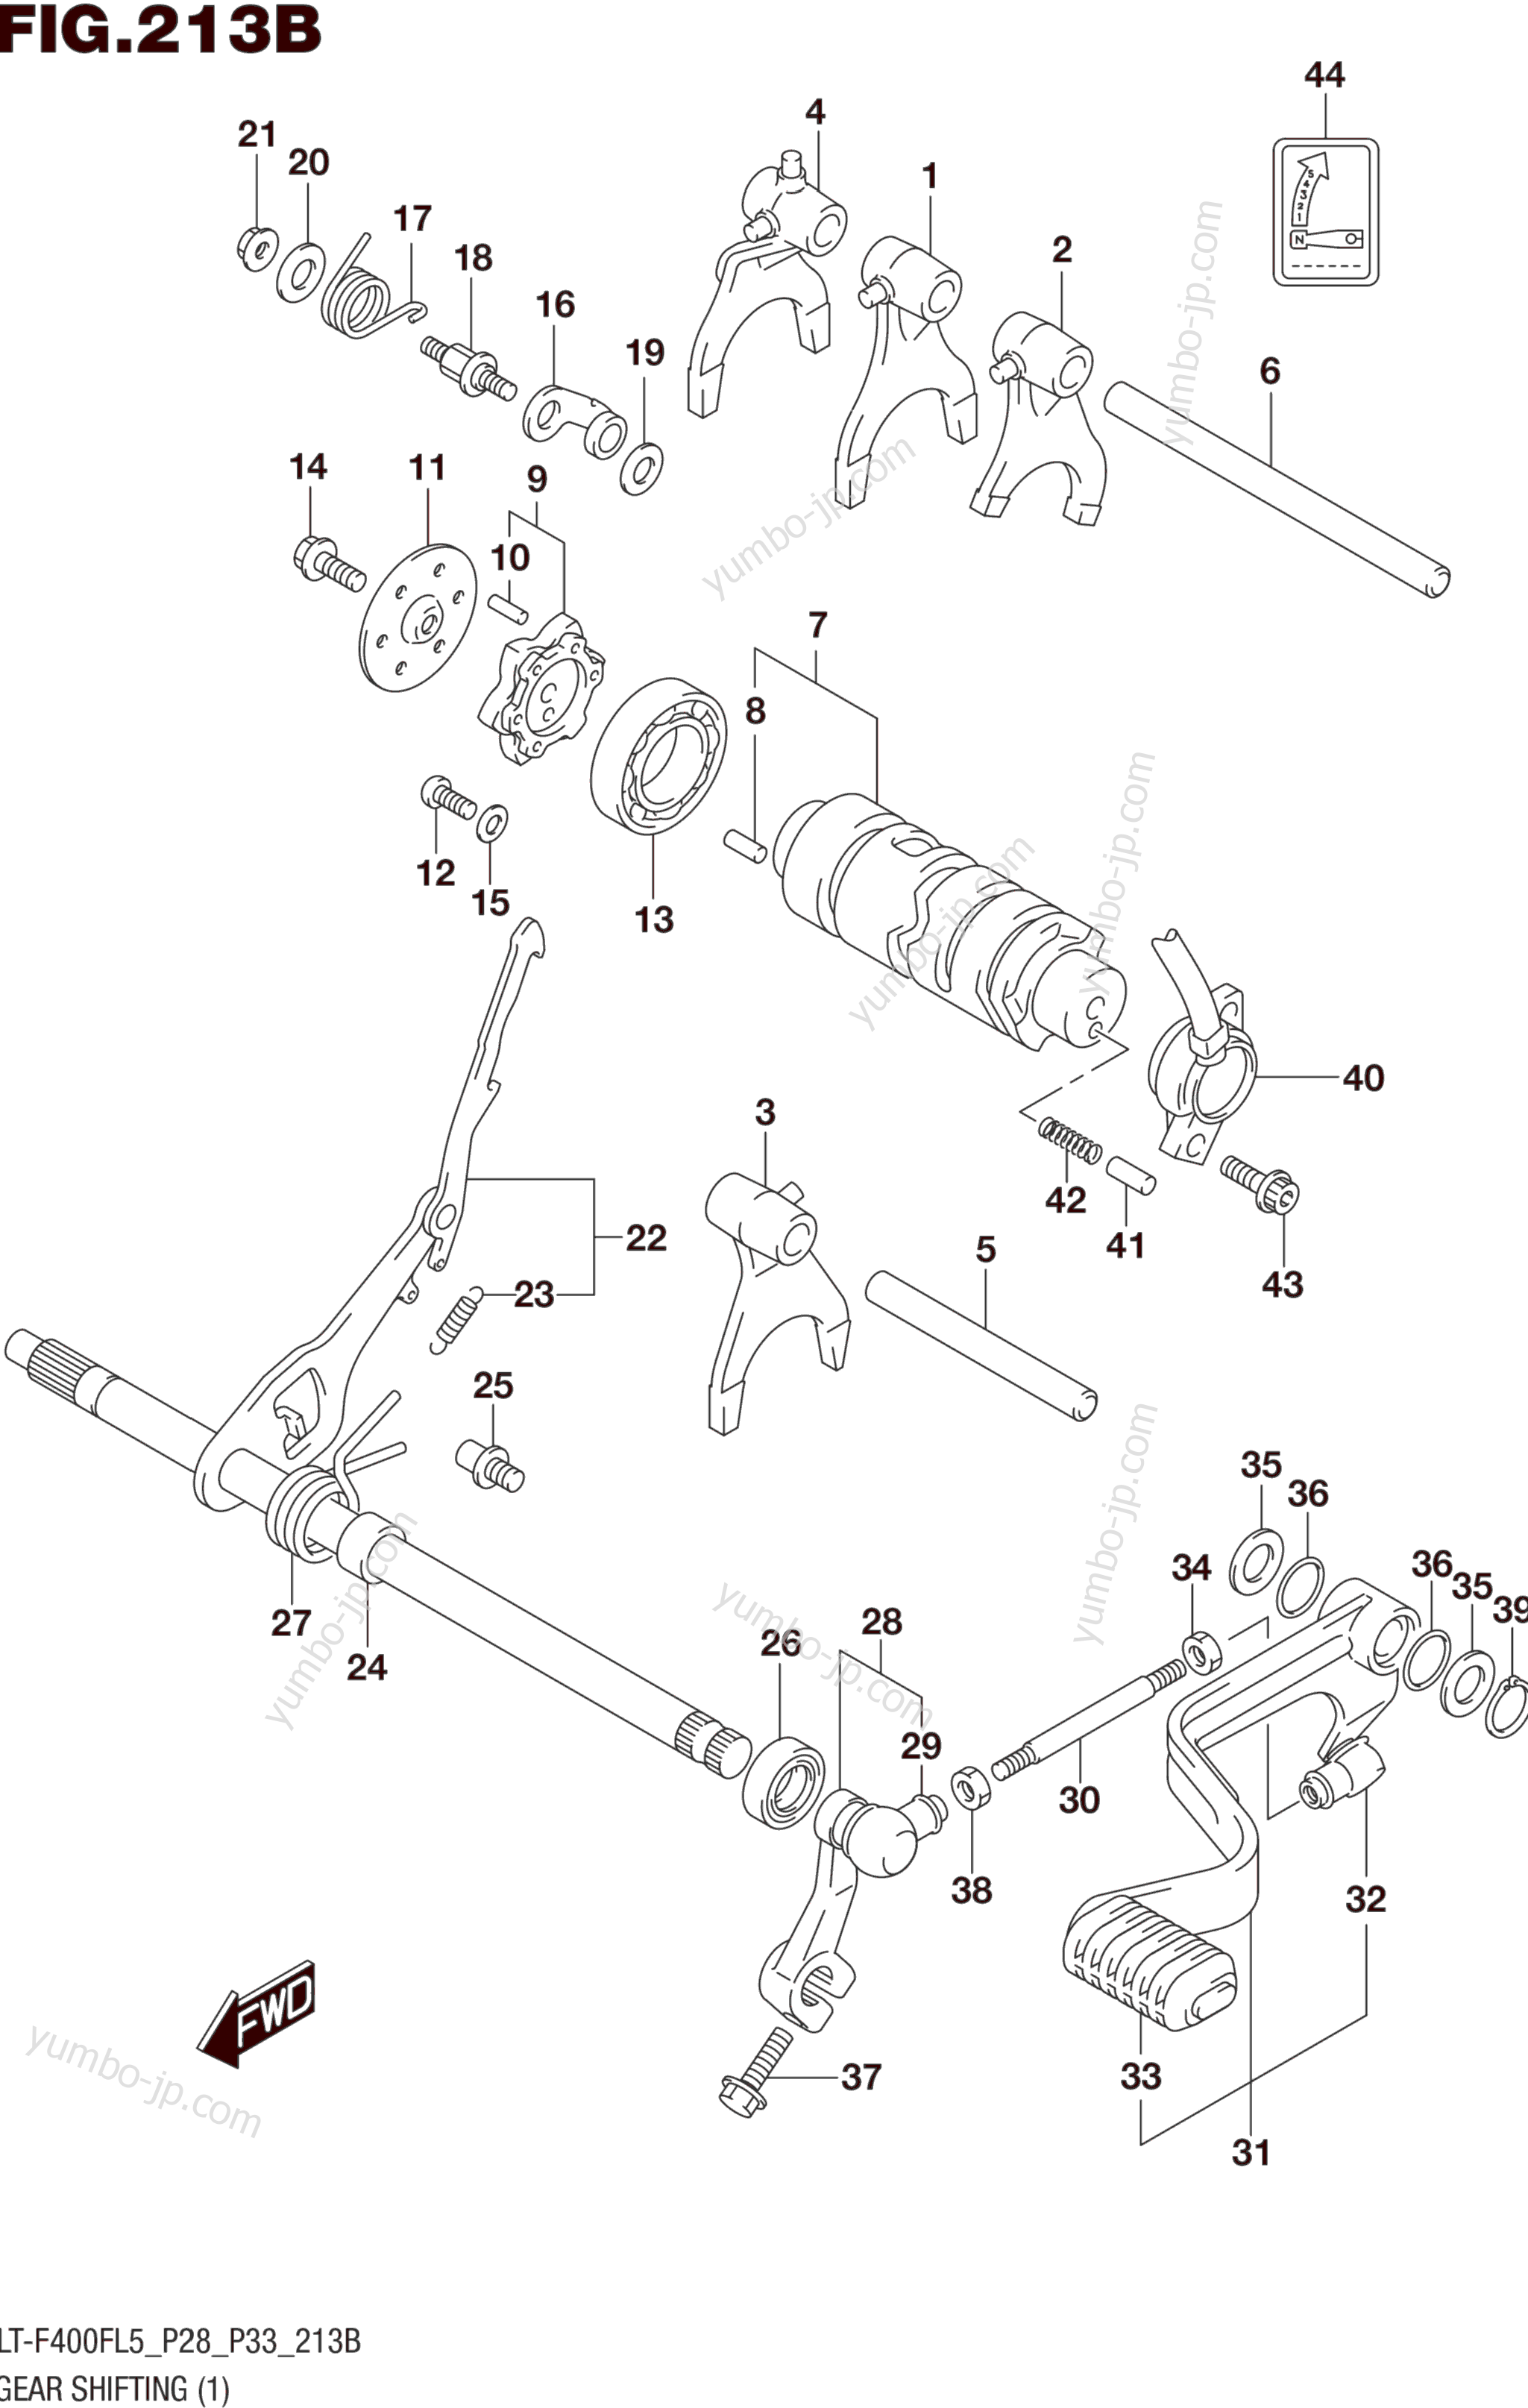 GEAR SHIFTING (1) (LT-F400FL5 P33) для квадроциклов SUZUKI LT-F400F 2015 г.